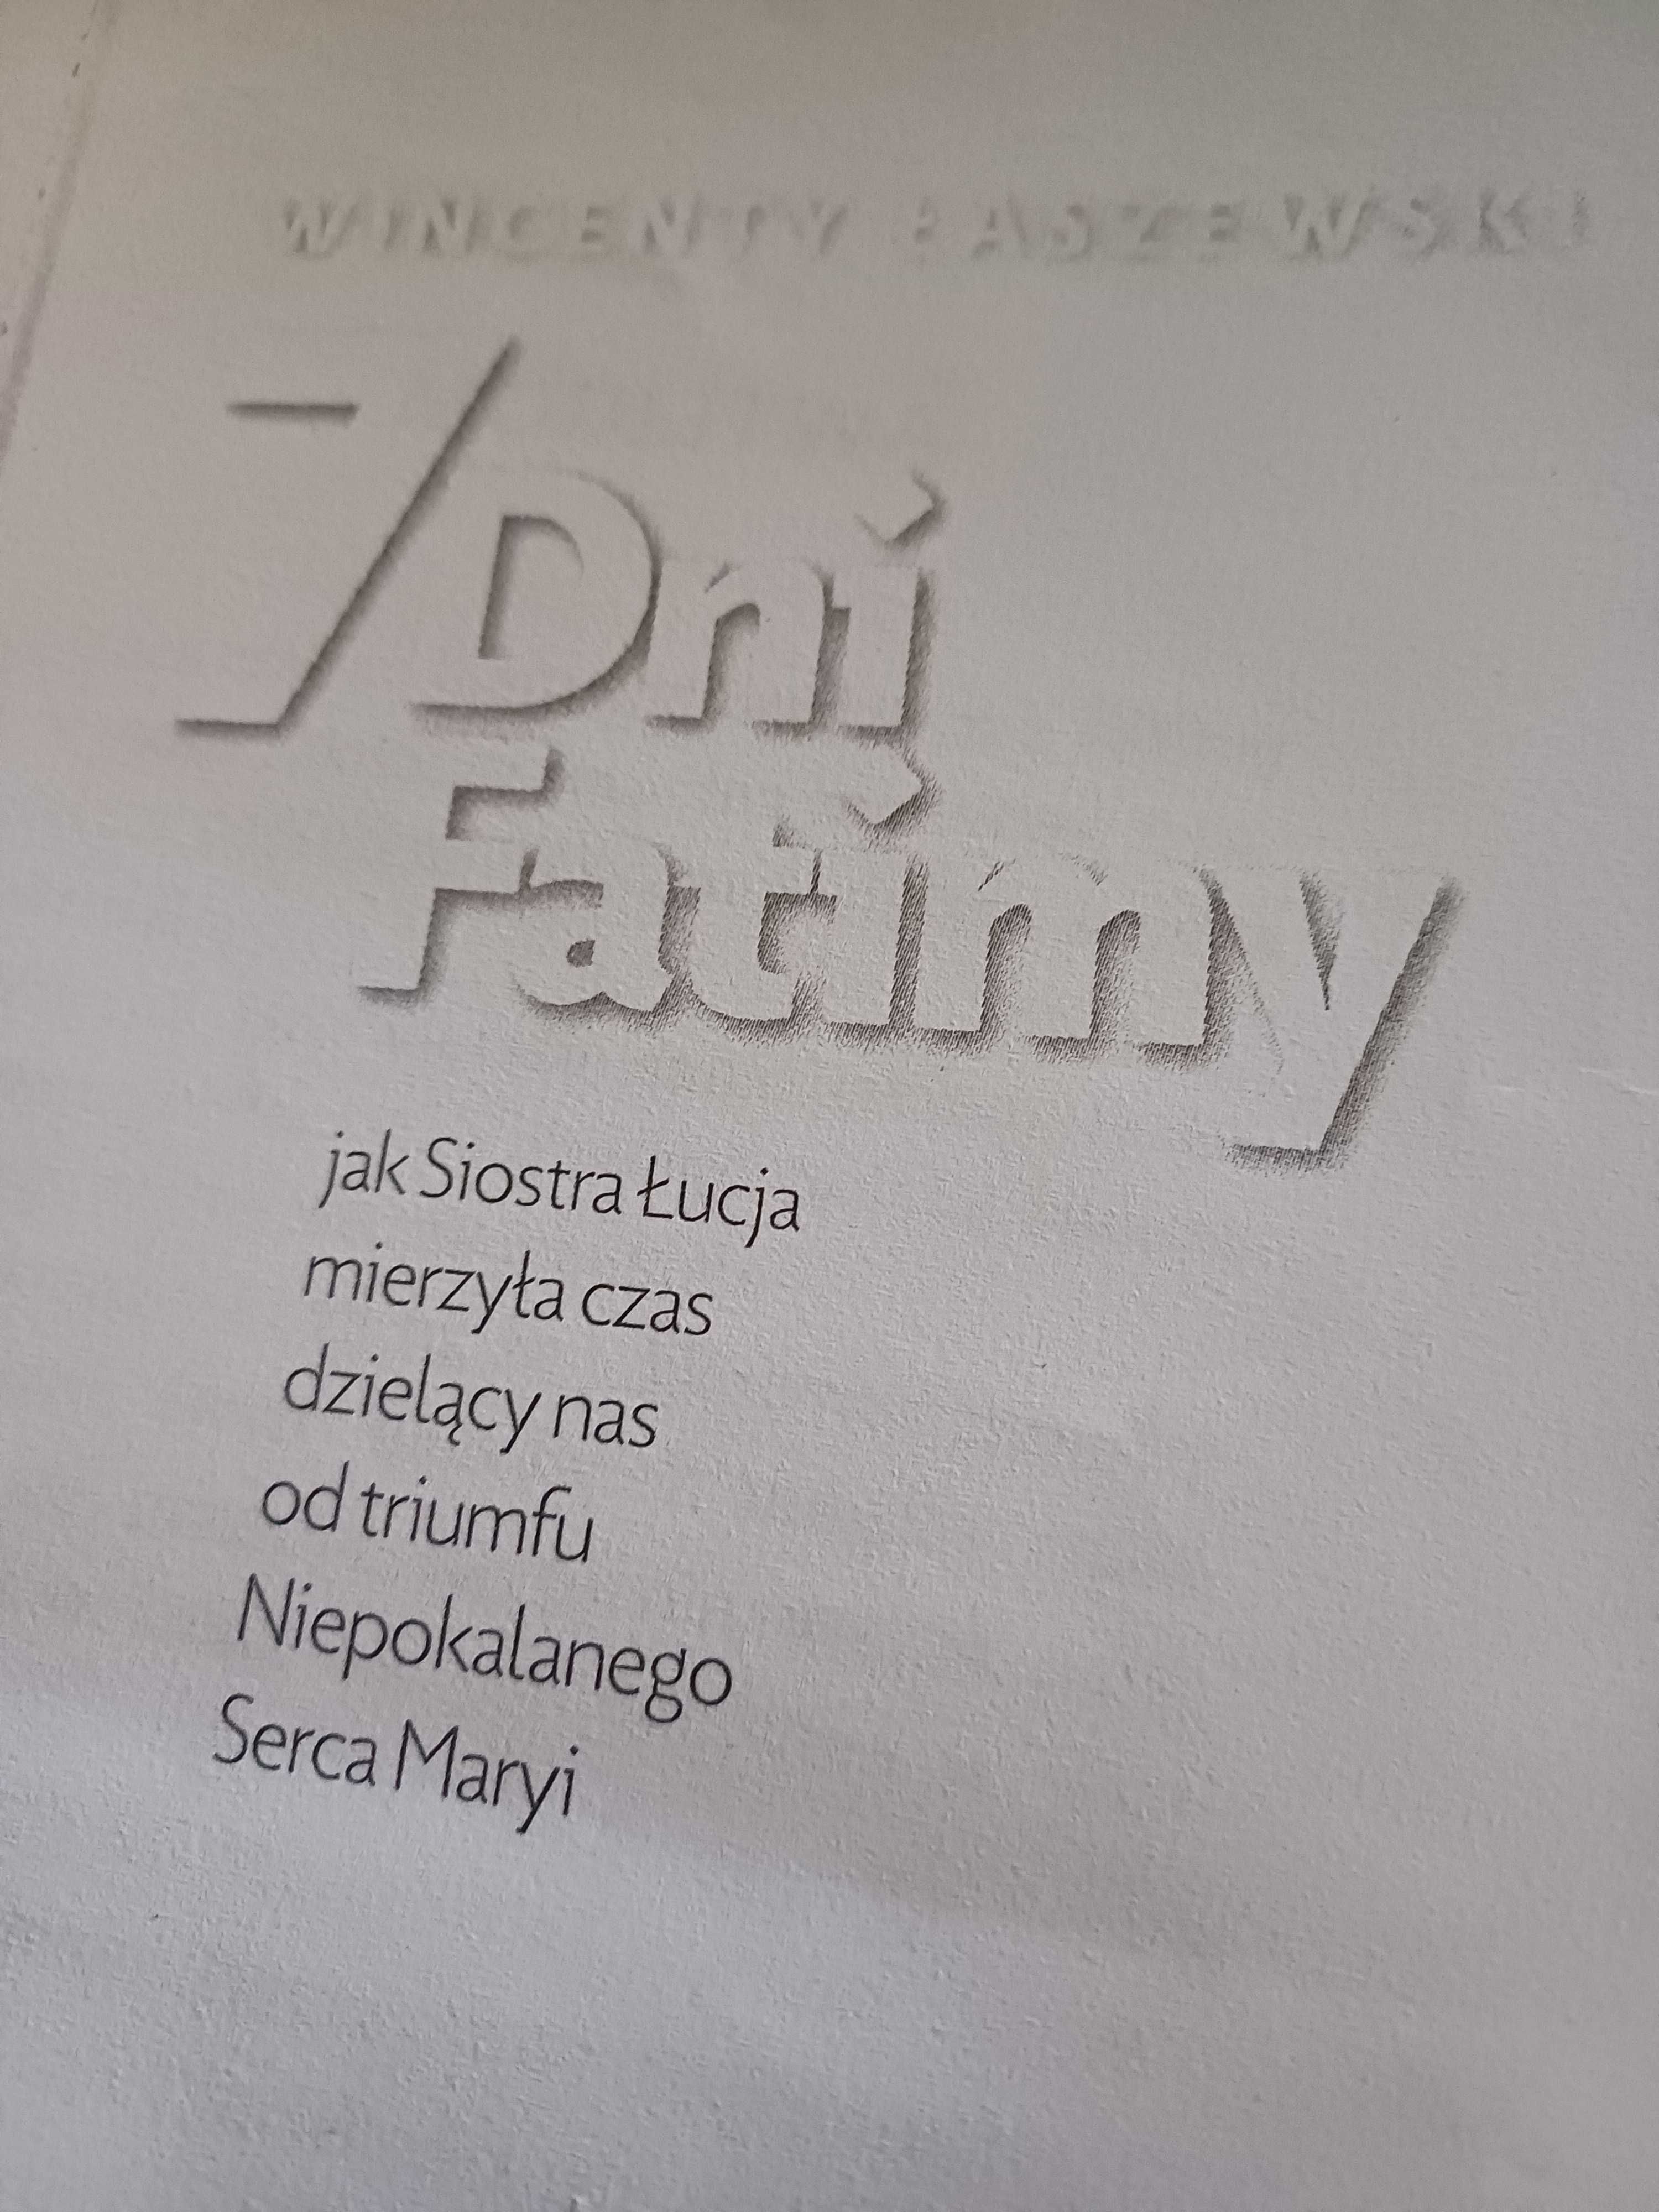 7 dni Fatimy Wincenty Łaszewski